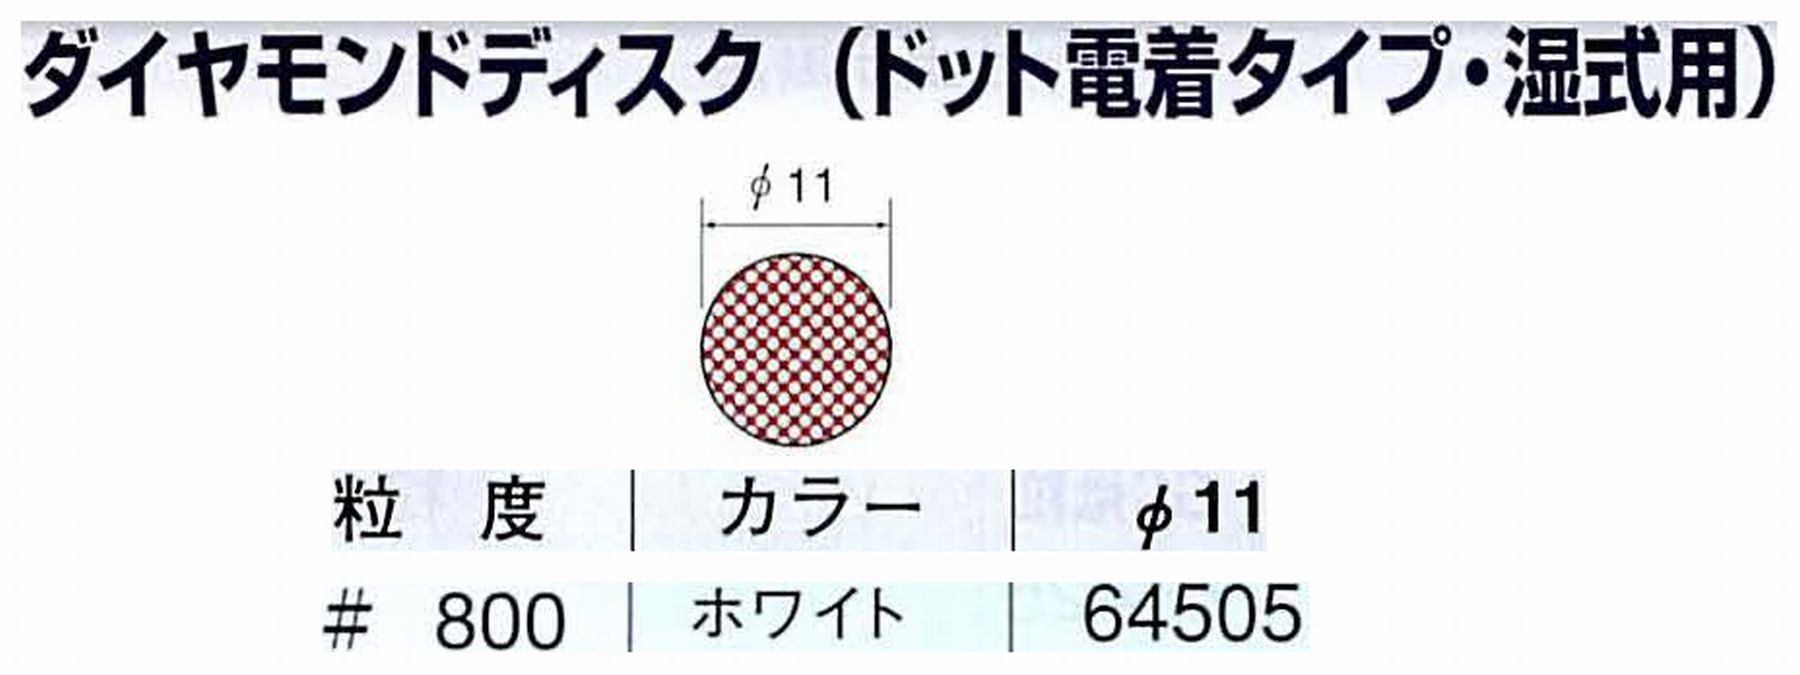 ナカニシ/NAKANISHI アングルグラインダ(電動・エアー) アングルアタッチメント専用工具 ダイヤモンドディスク(ドット電着タイプ・湿式用) 64505